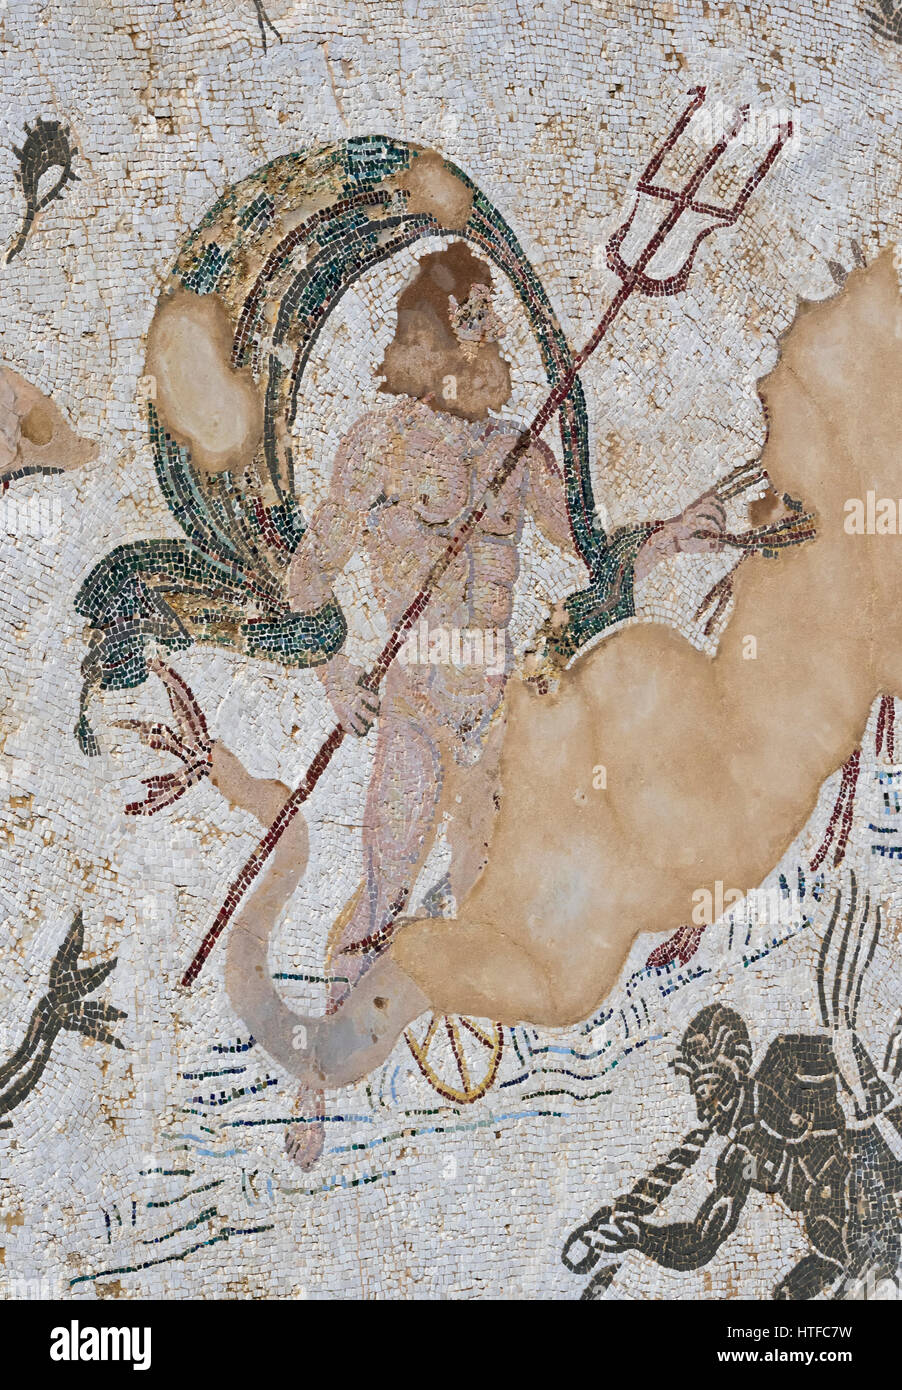 Römischen Stadt Italica, in der Nähe von Santiponce, Provinz Sevilla, Andalusien, Südspanien. Mosaik von Neptun in die Casa de Neptuno - Haus des Neptun. Stockfoto